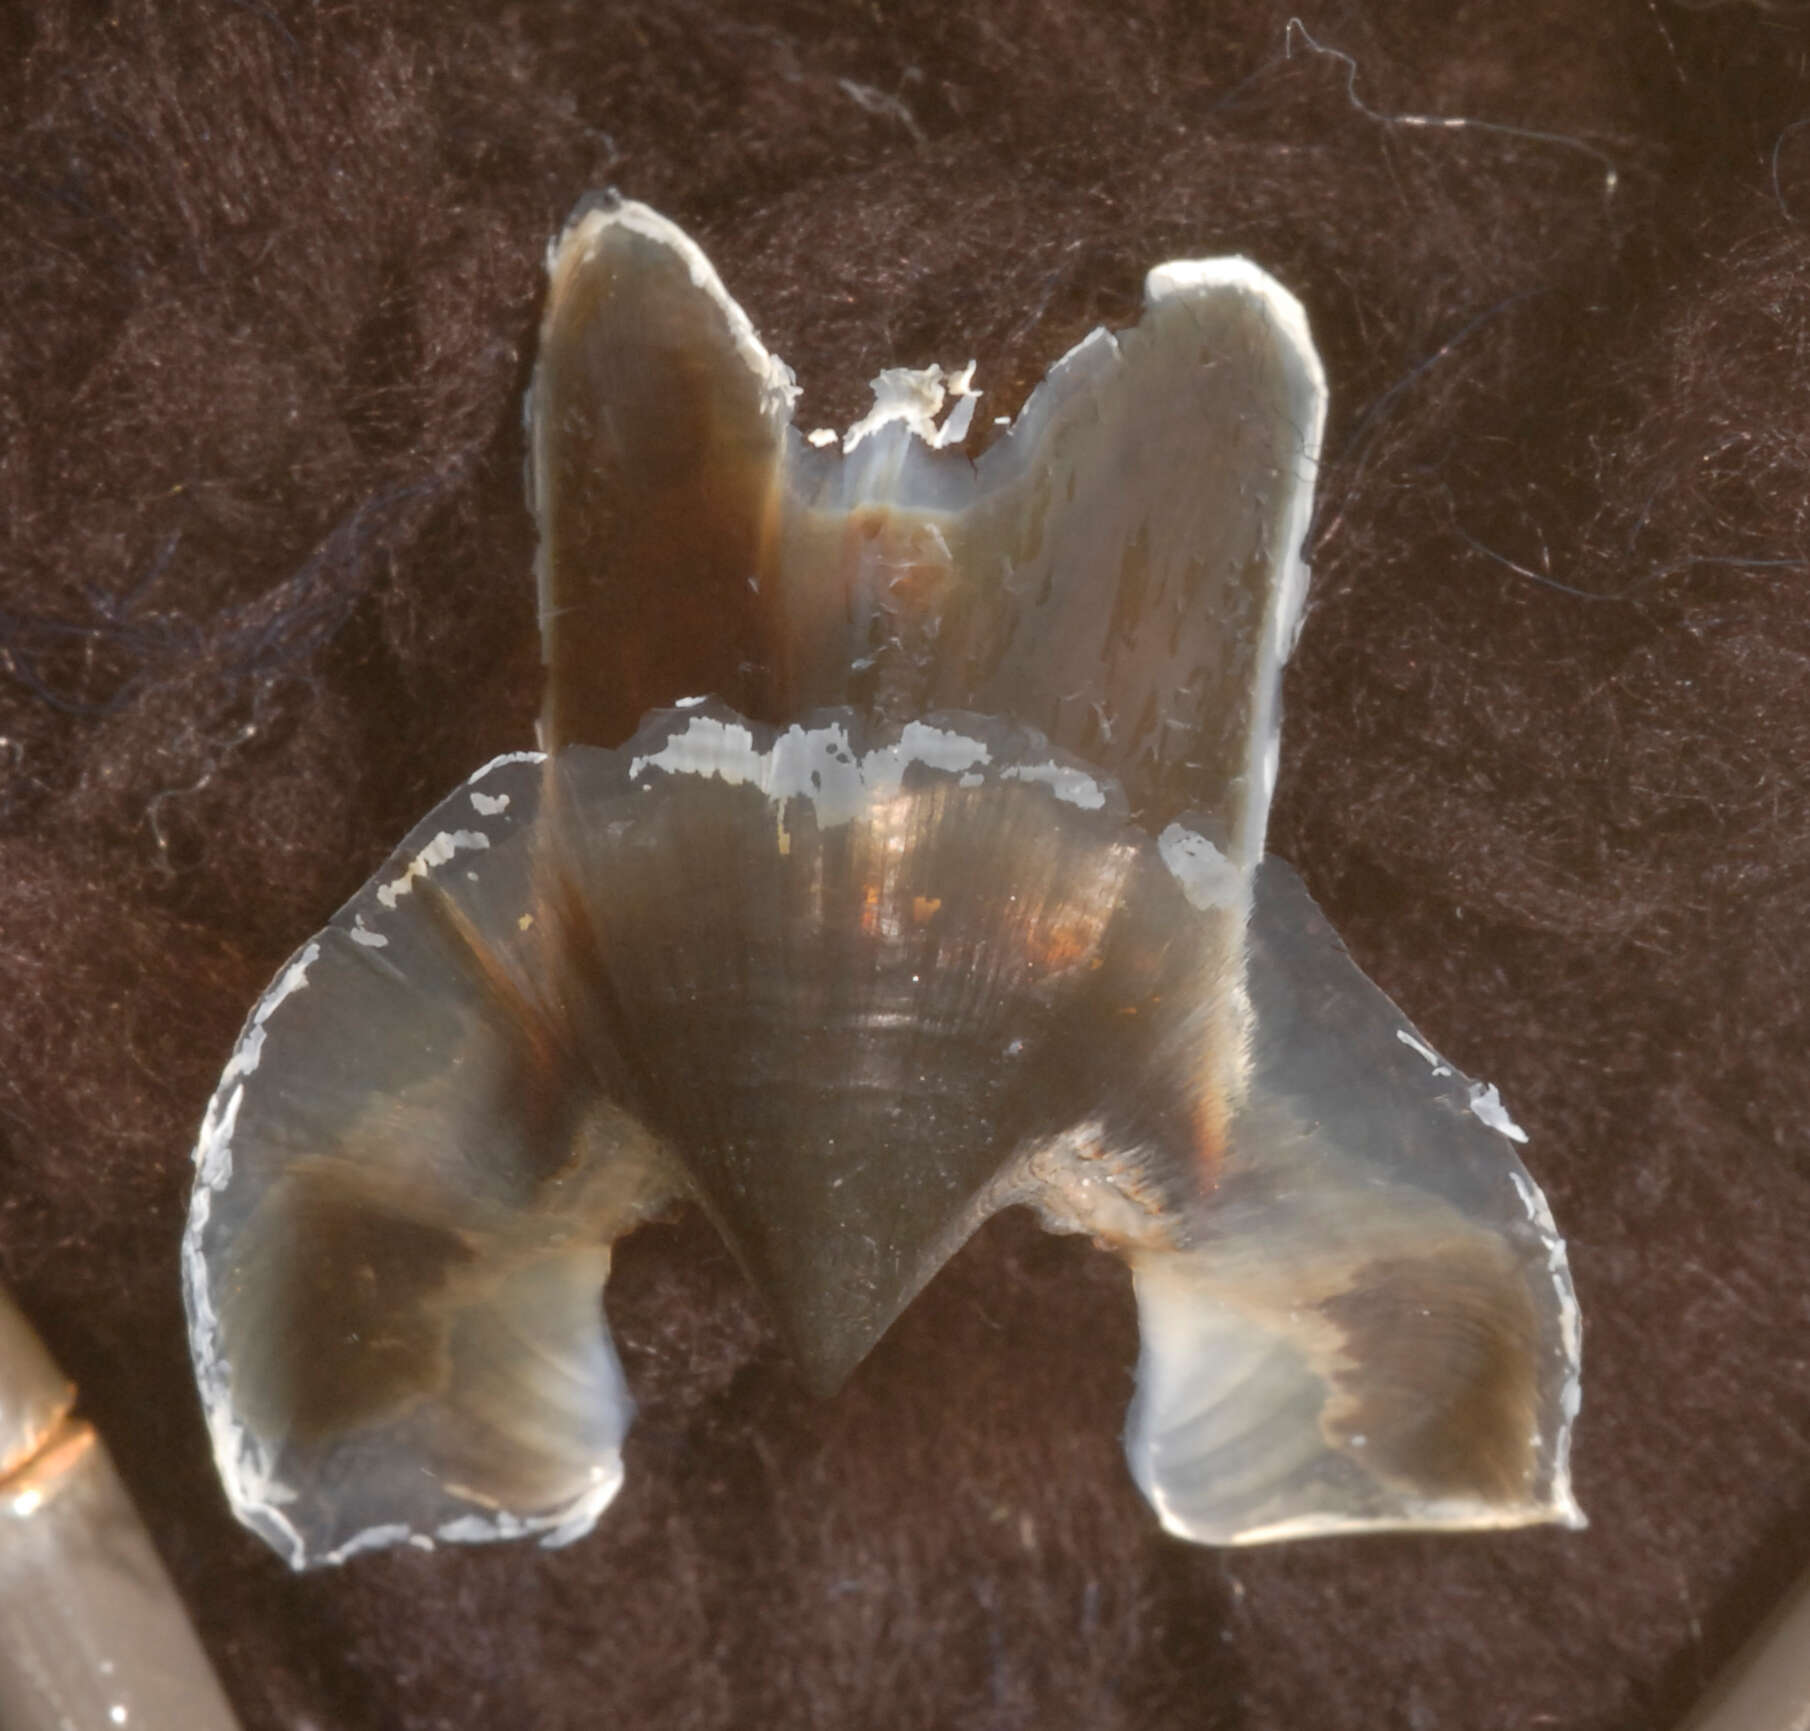 Image of Promachoteuthidae Naef 1912